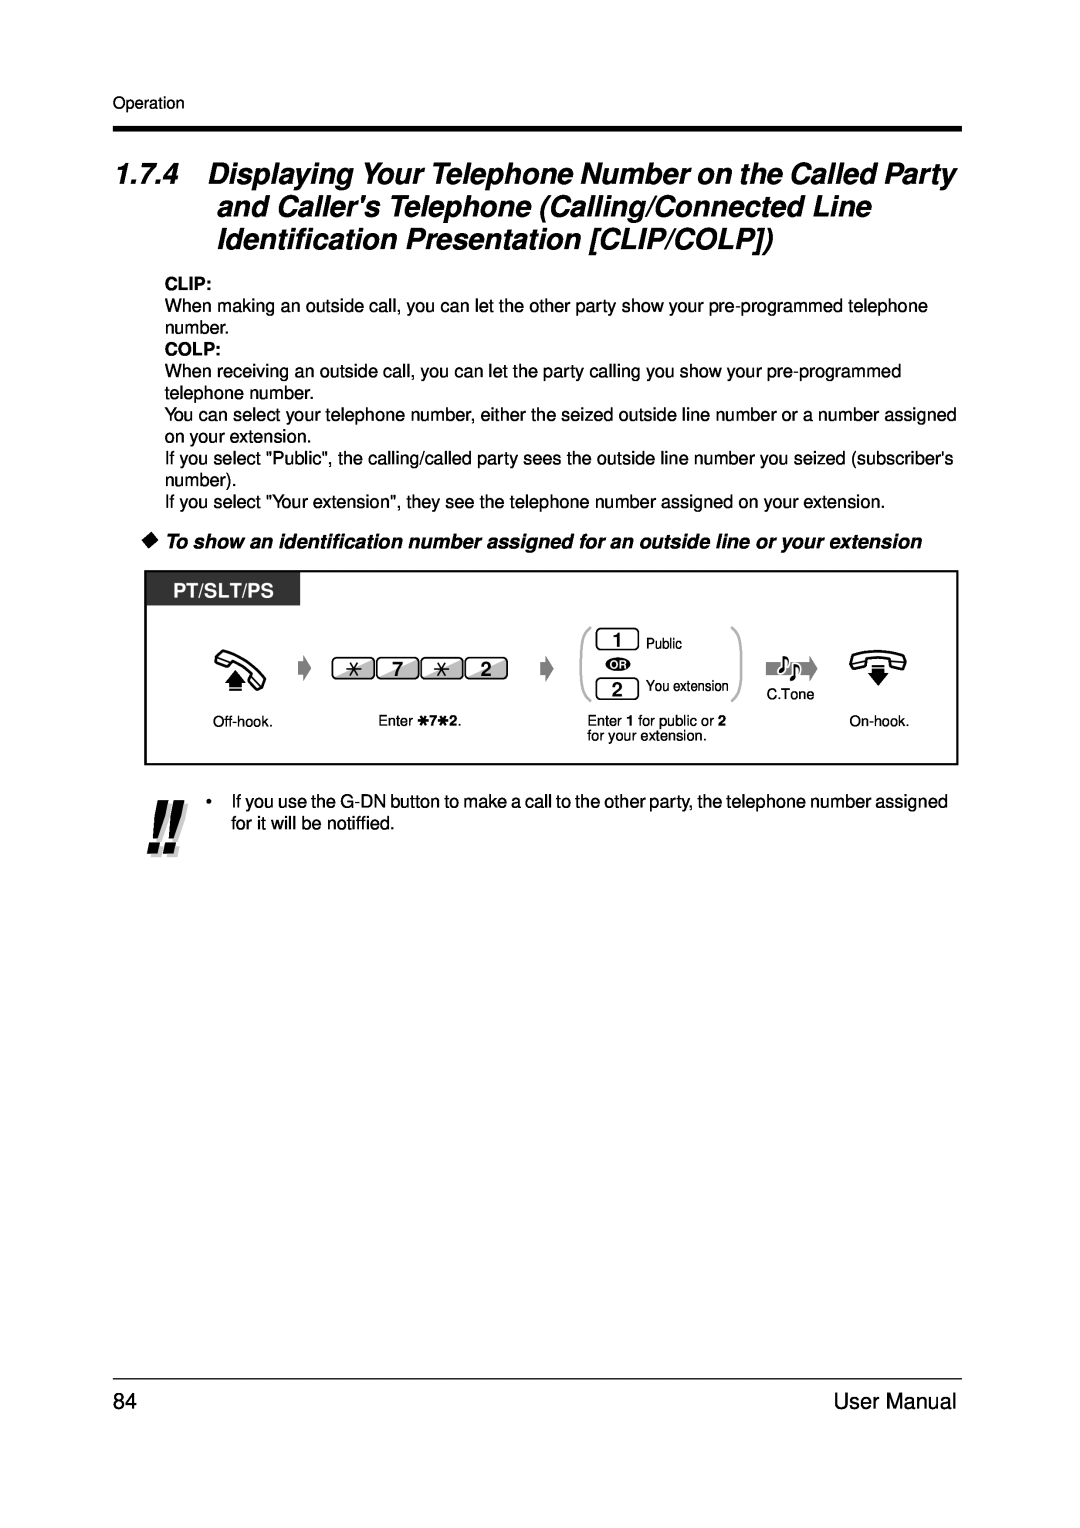 Panasonic KX-TDA200 user manual Pt/Slt/Ps, Clip, Colp 